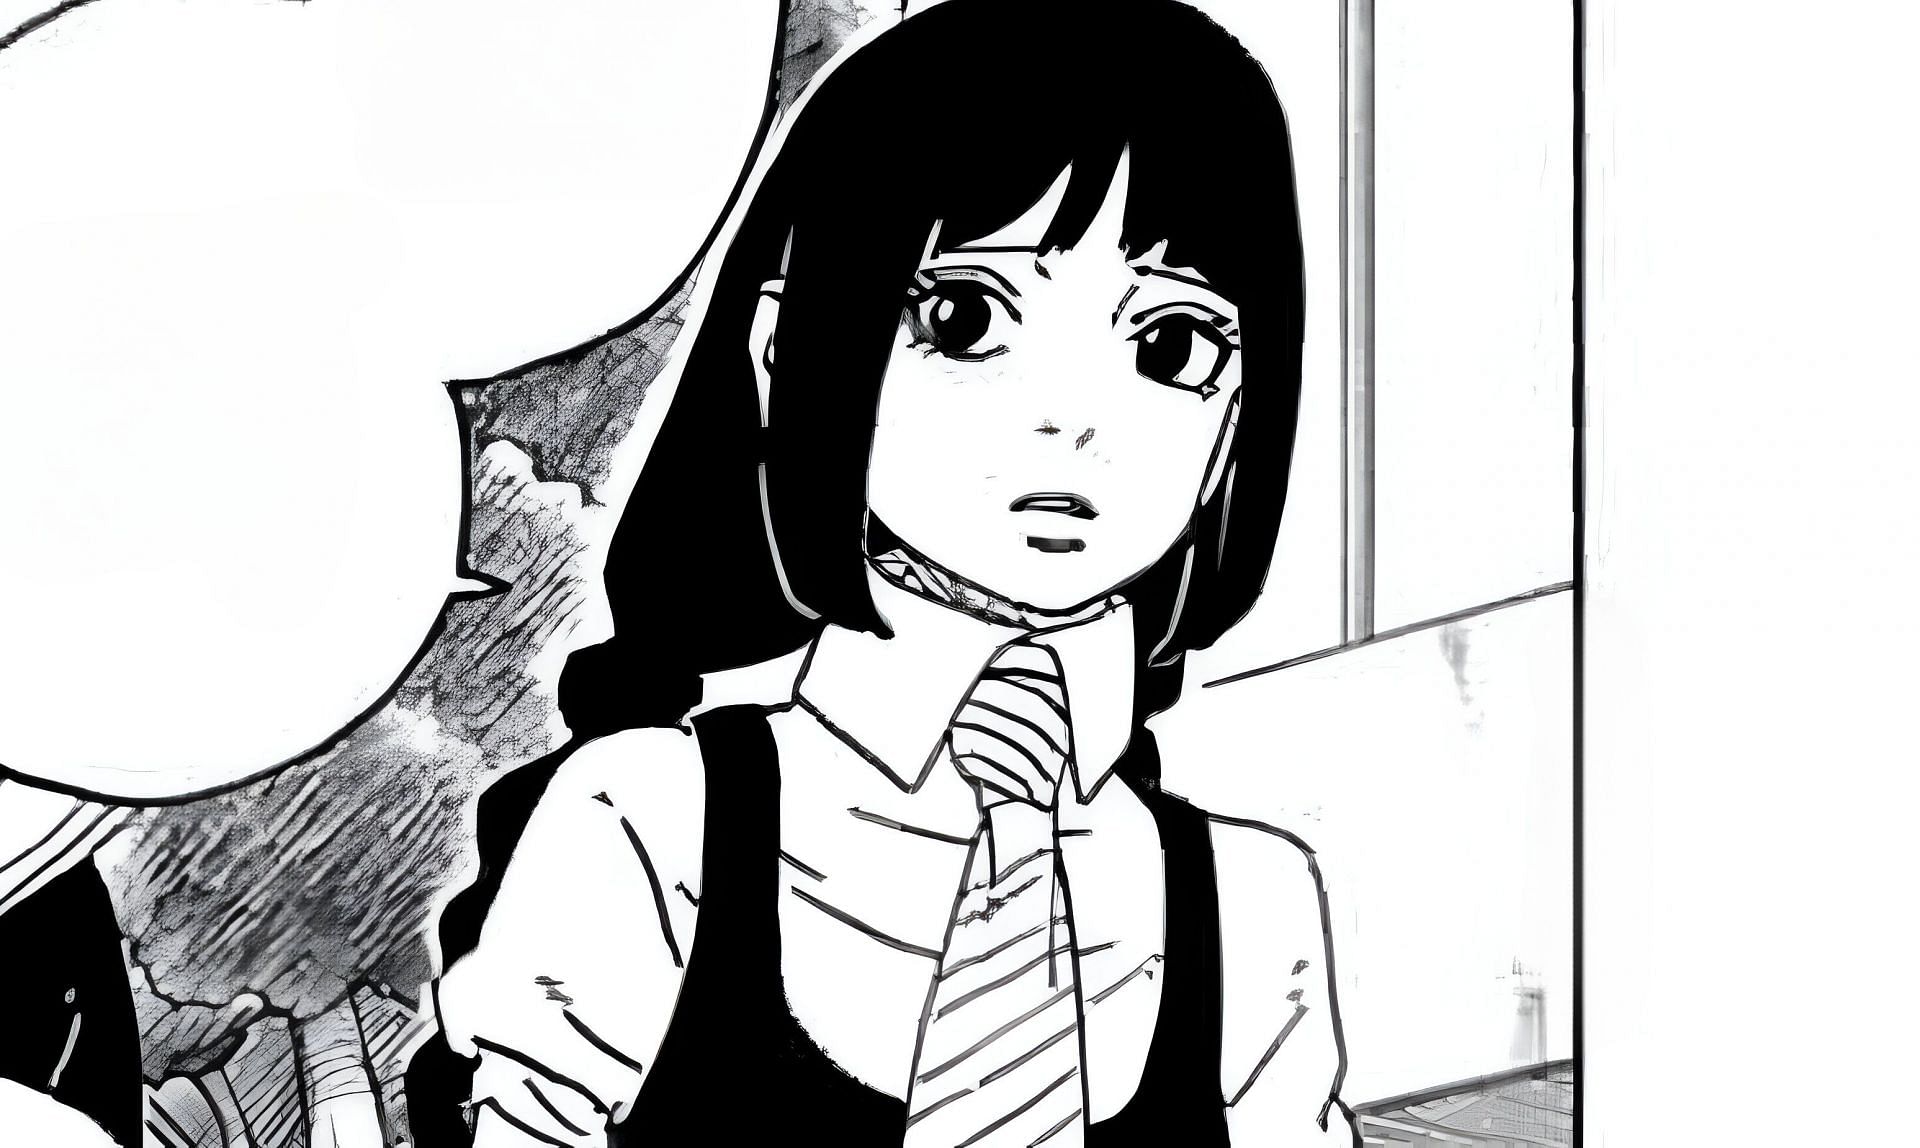 Sumire Kakei as seen in the manga (Image via Shueisha)